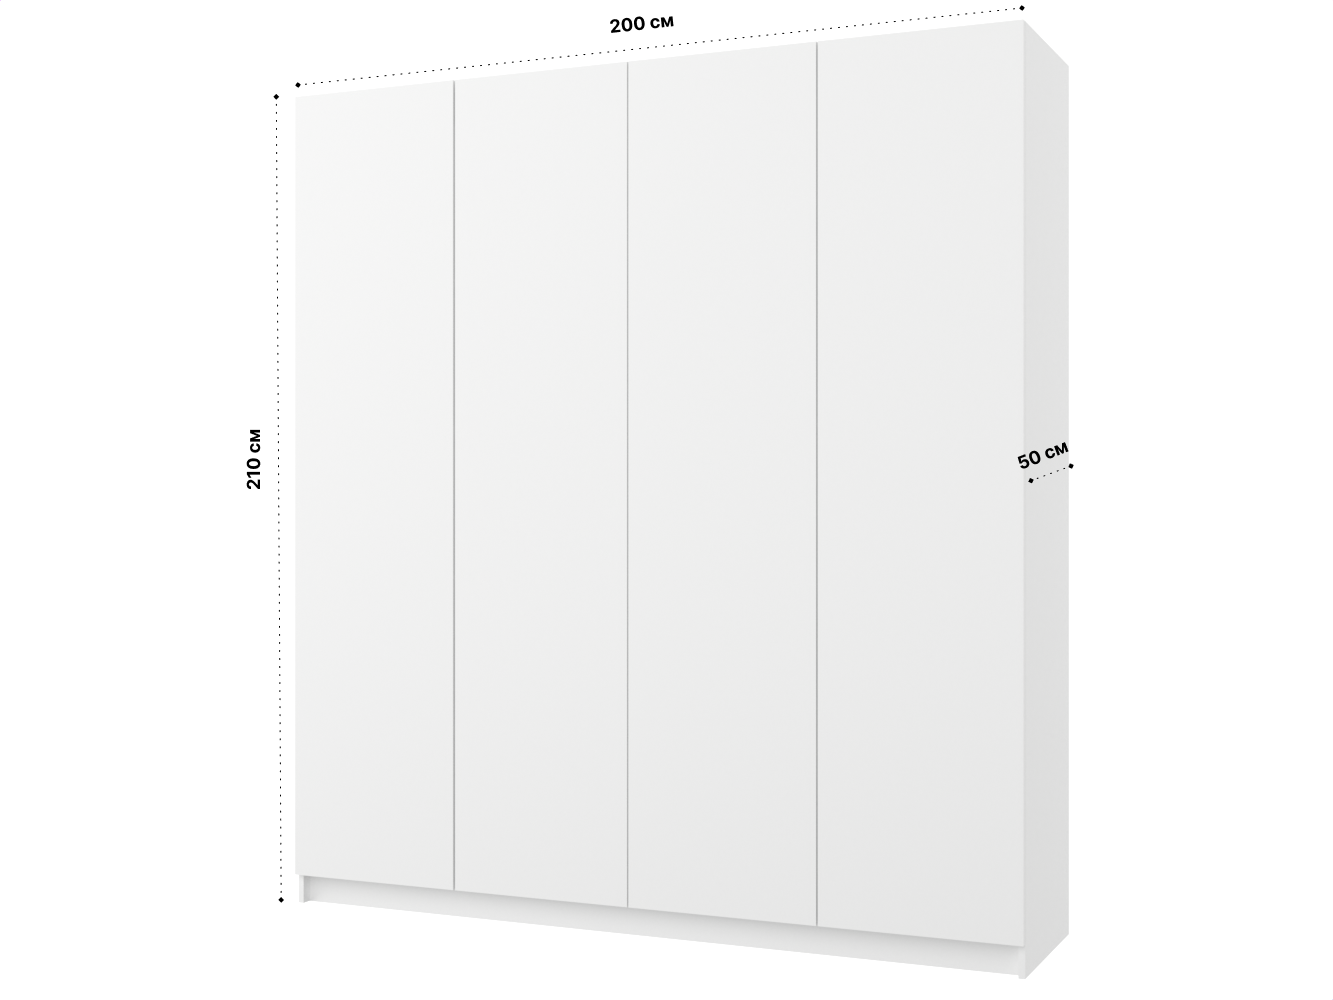 Распашной шкаф Пакс Фардал 132 white ИКЕА (IKEA) изображение товара